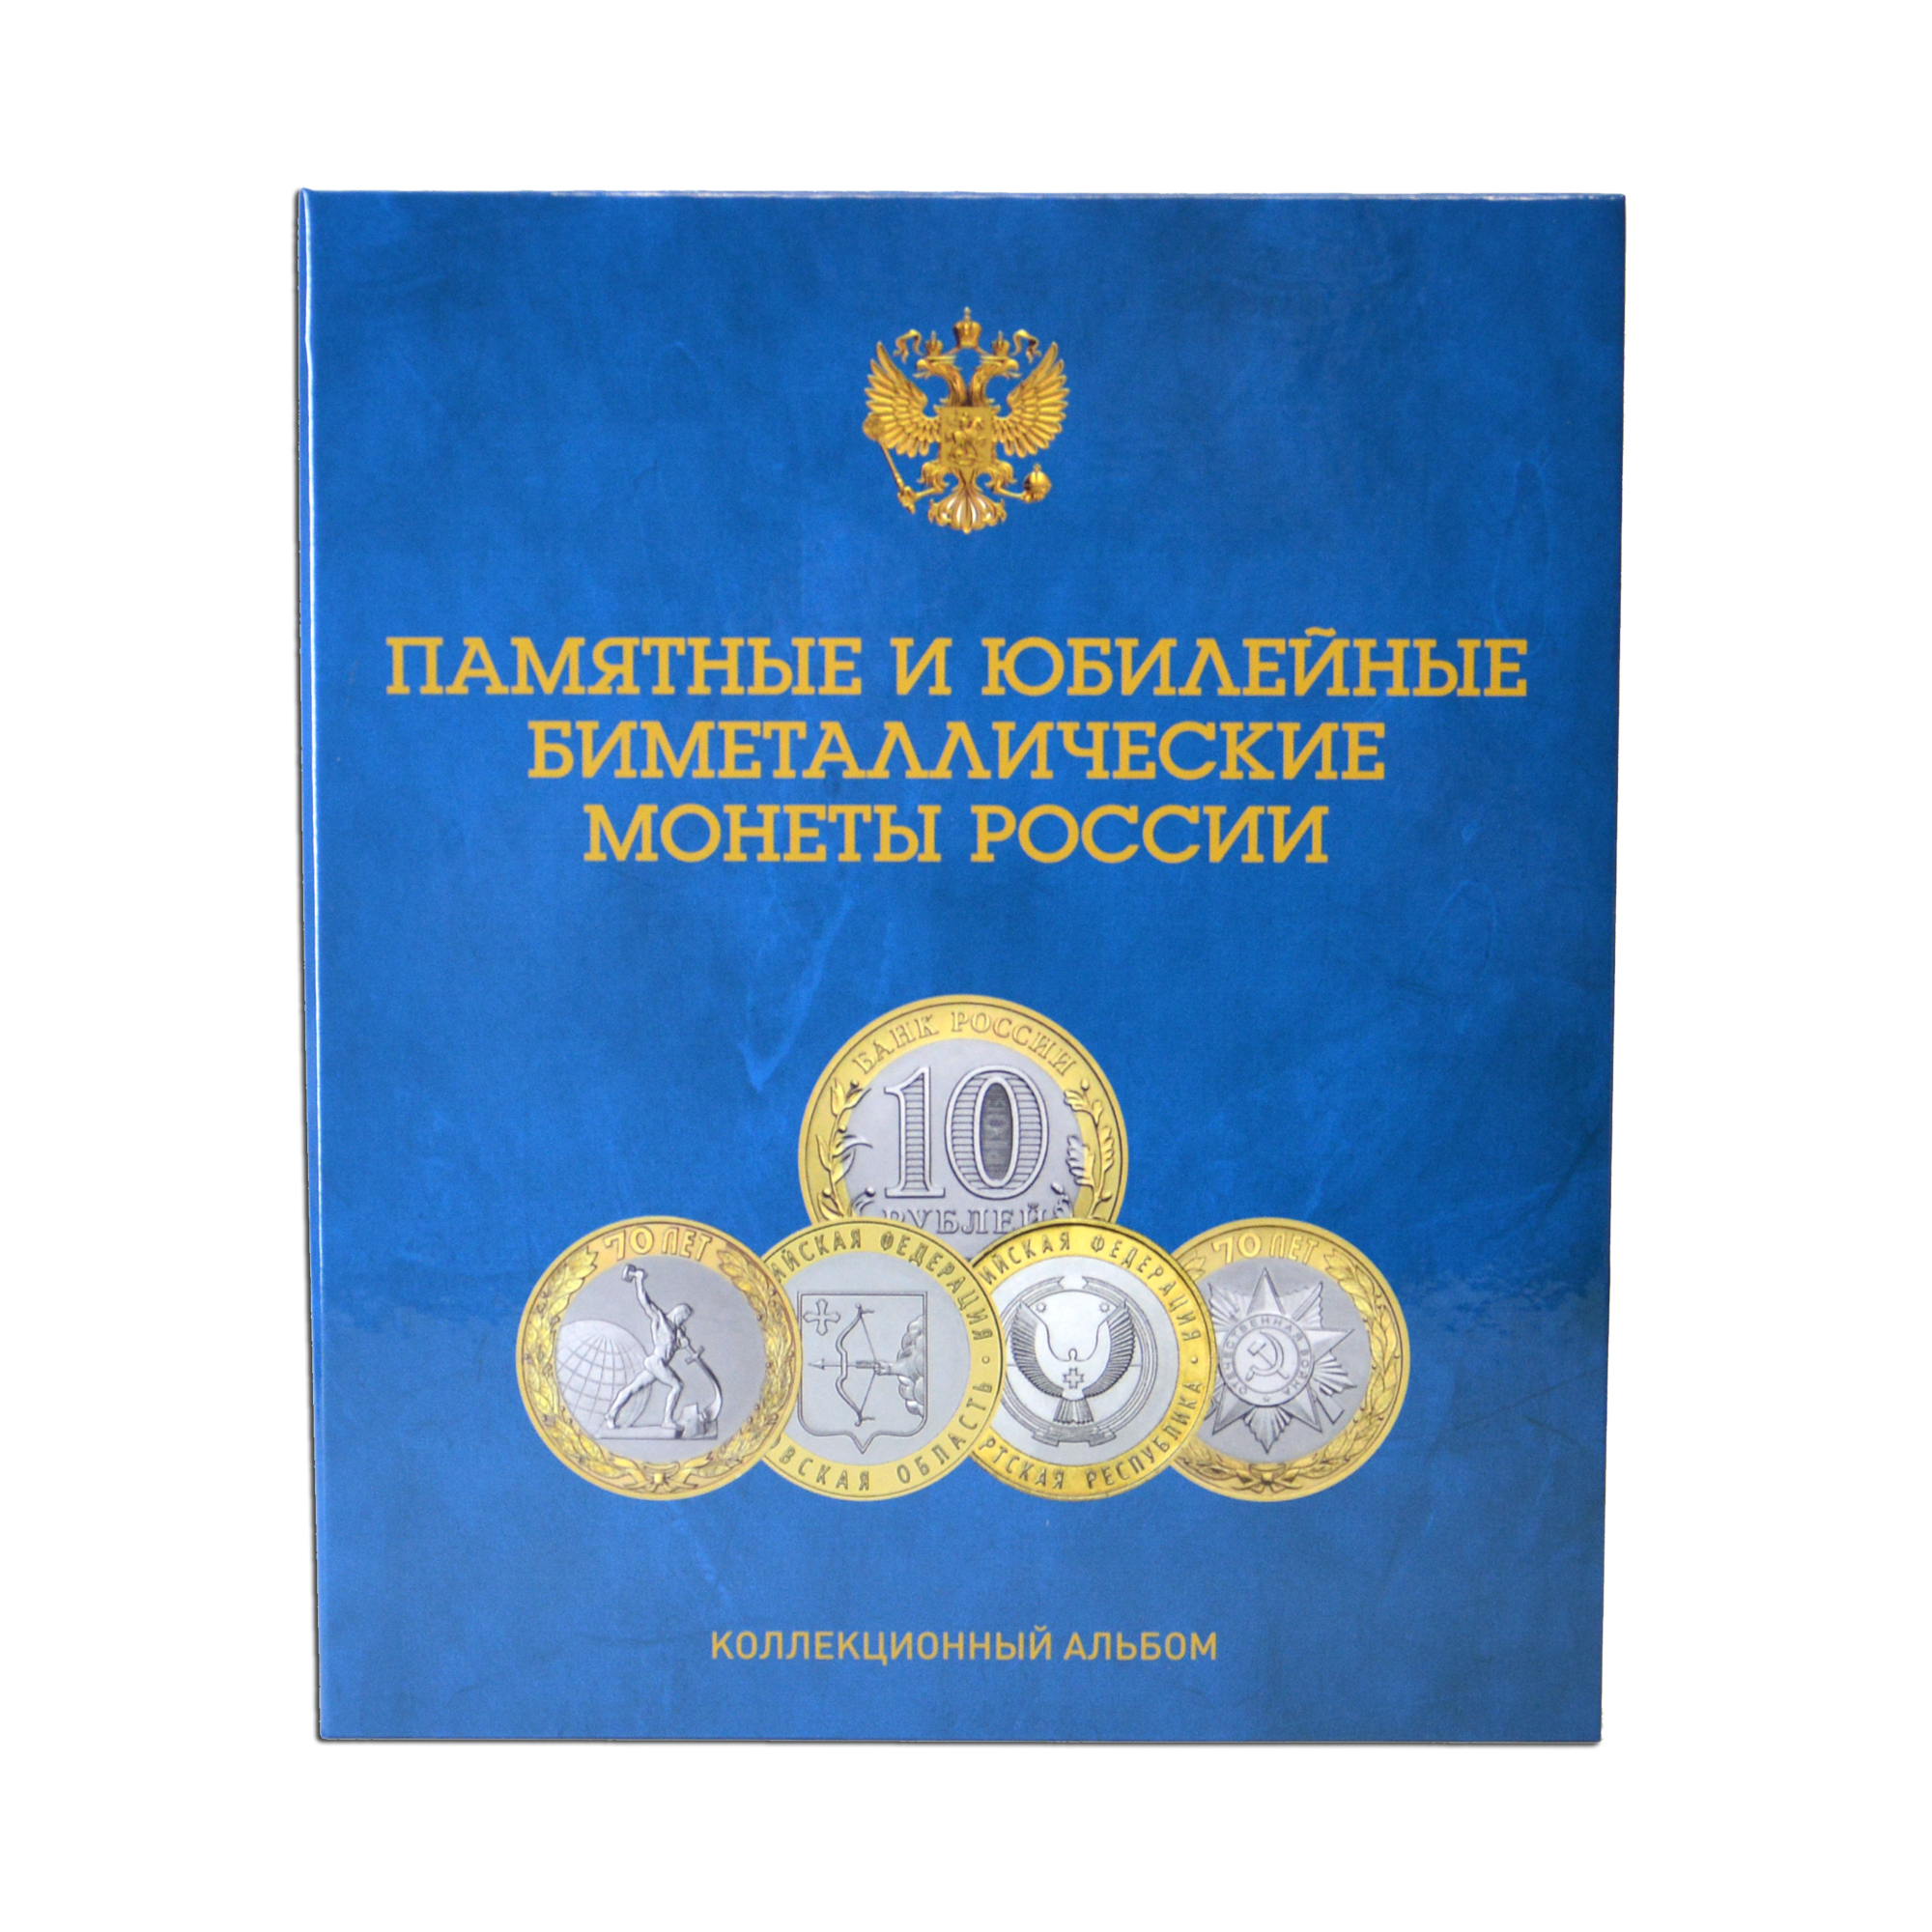 Купить капсульный альбом-книга со съемными листами для 140 монет 10 рублей (биметалл) на два монетных двора, фото , изображение 2